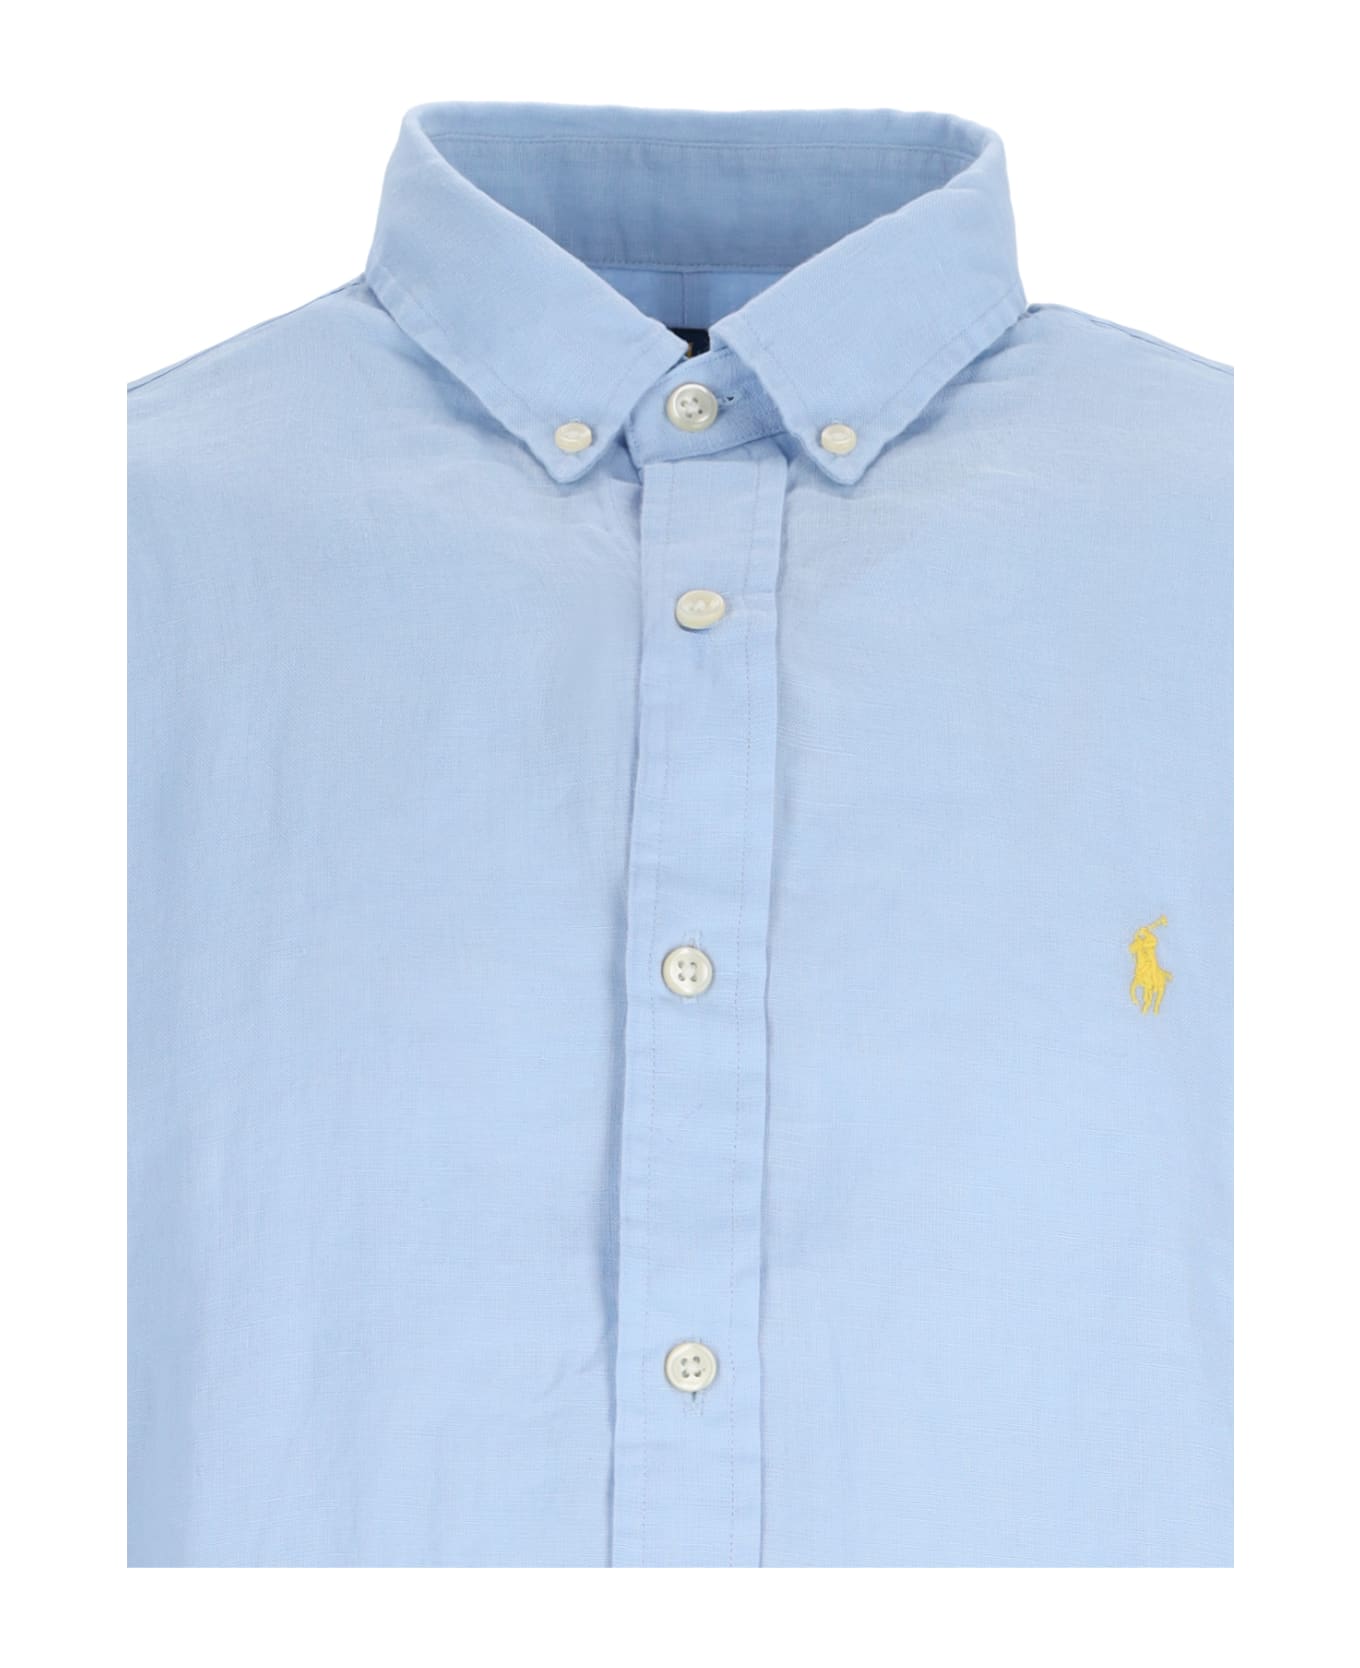 Polo Ralph Lauren Logo Shirt - Light Blue